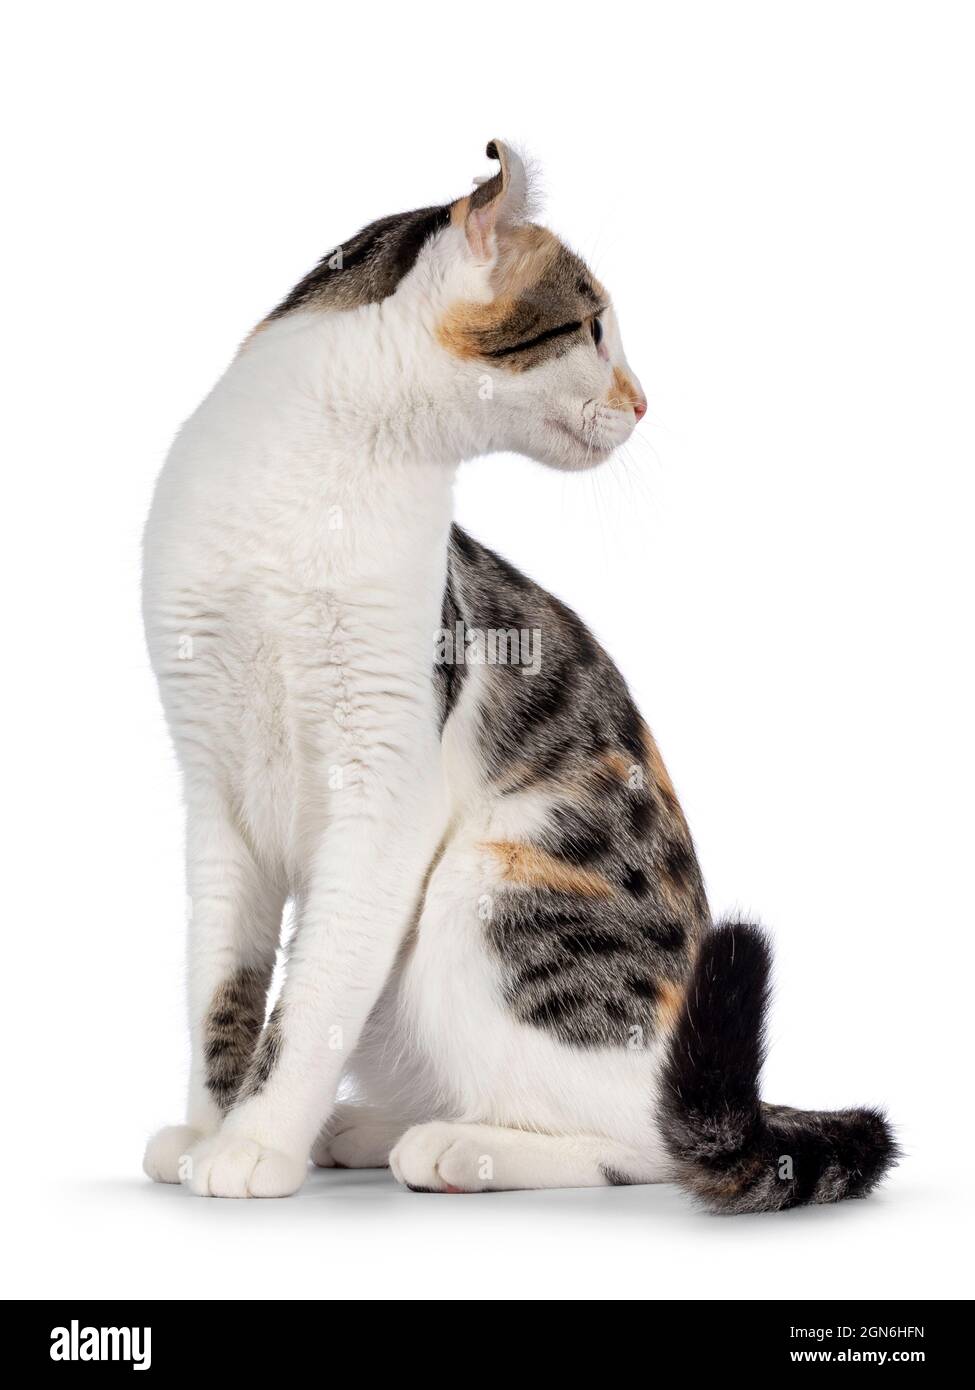 Incredibile modello avvistato American Curl Shortair gatto, seduta su modi laterali. Testa ruotata all'indietro in direzione opposta alla telecamera che mostra il profilo e le orecchie. Isolato o Foto Stock